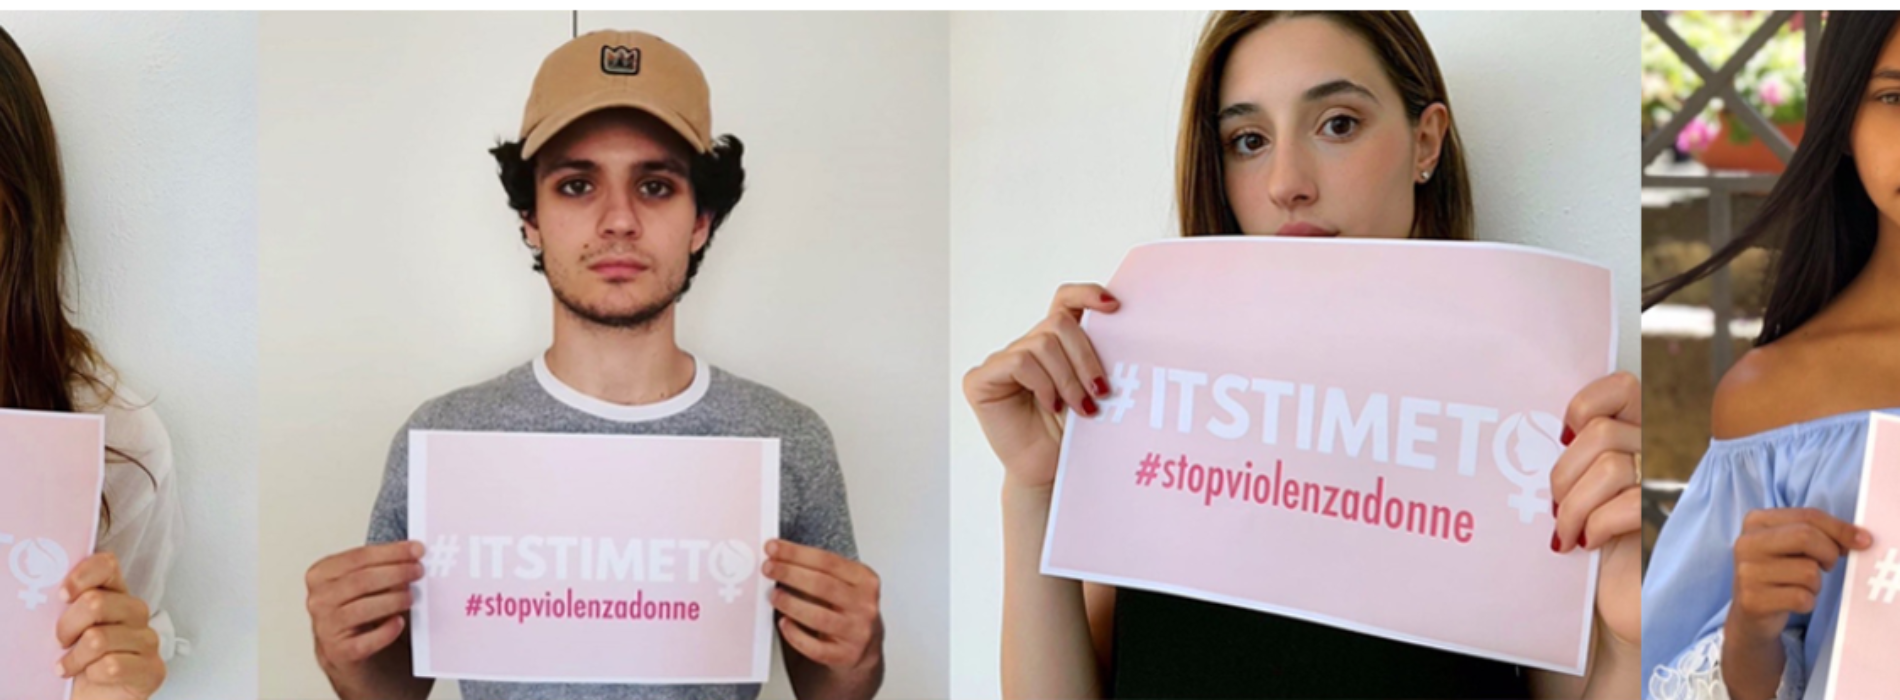 “Its’ time to..”, la campagna social #stopviolenzadonne